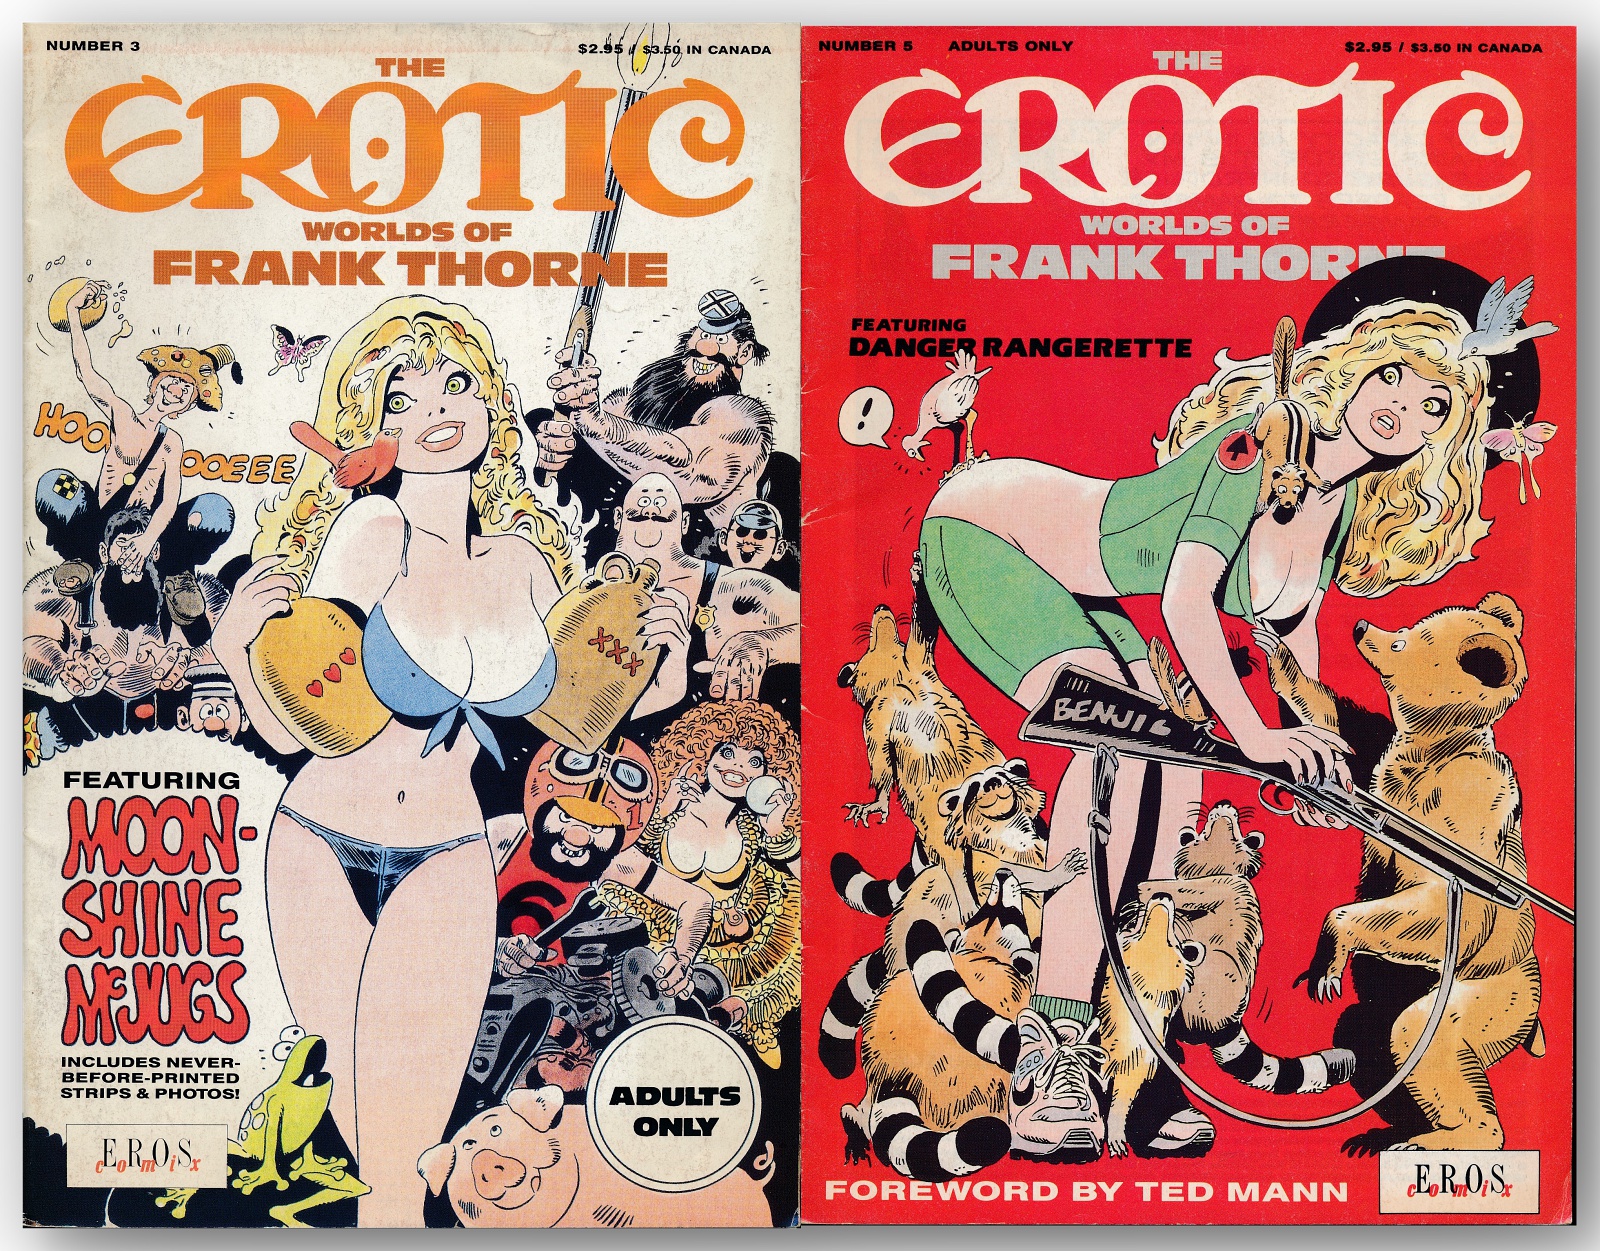 Erotic comic books